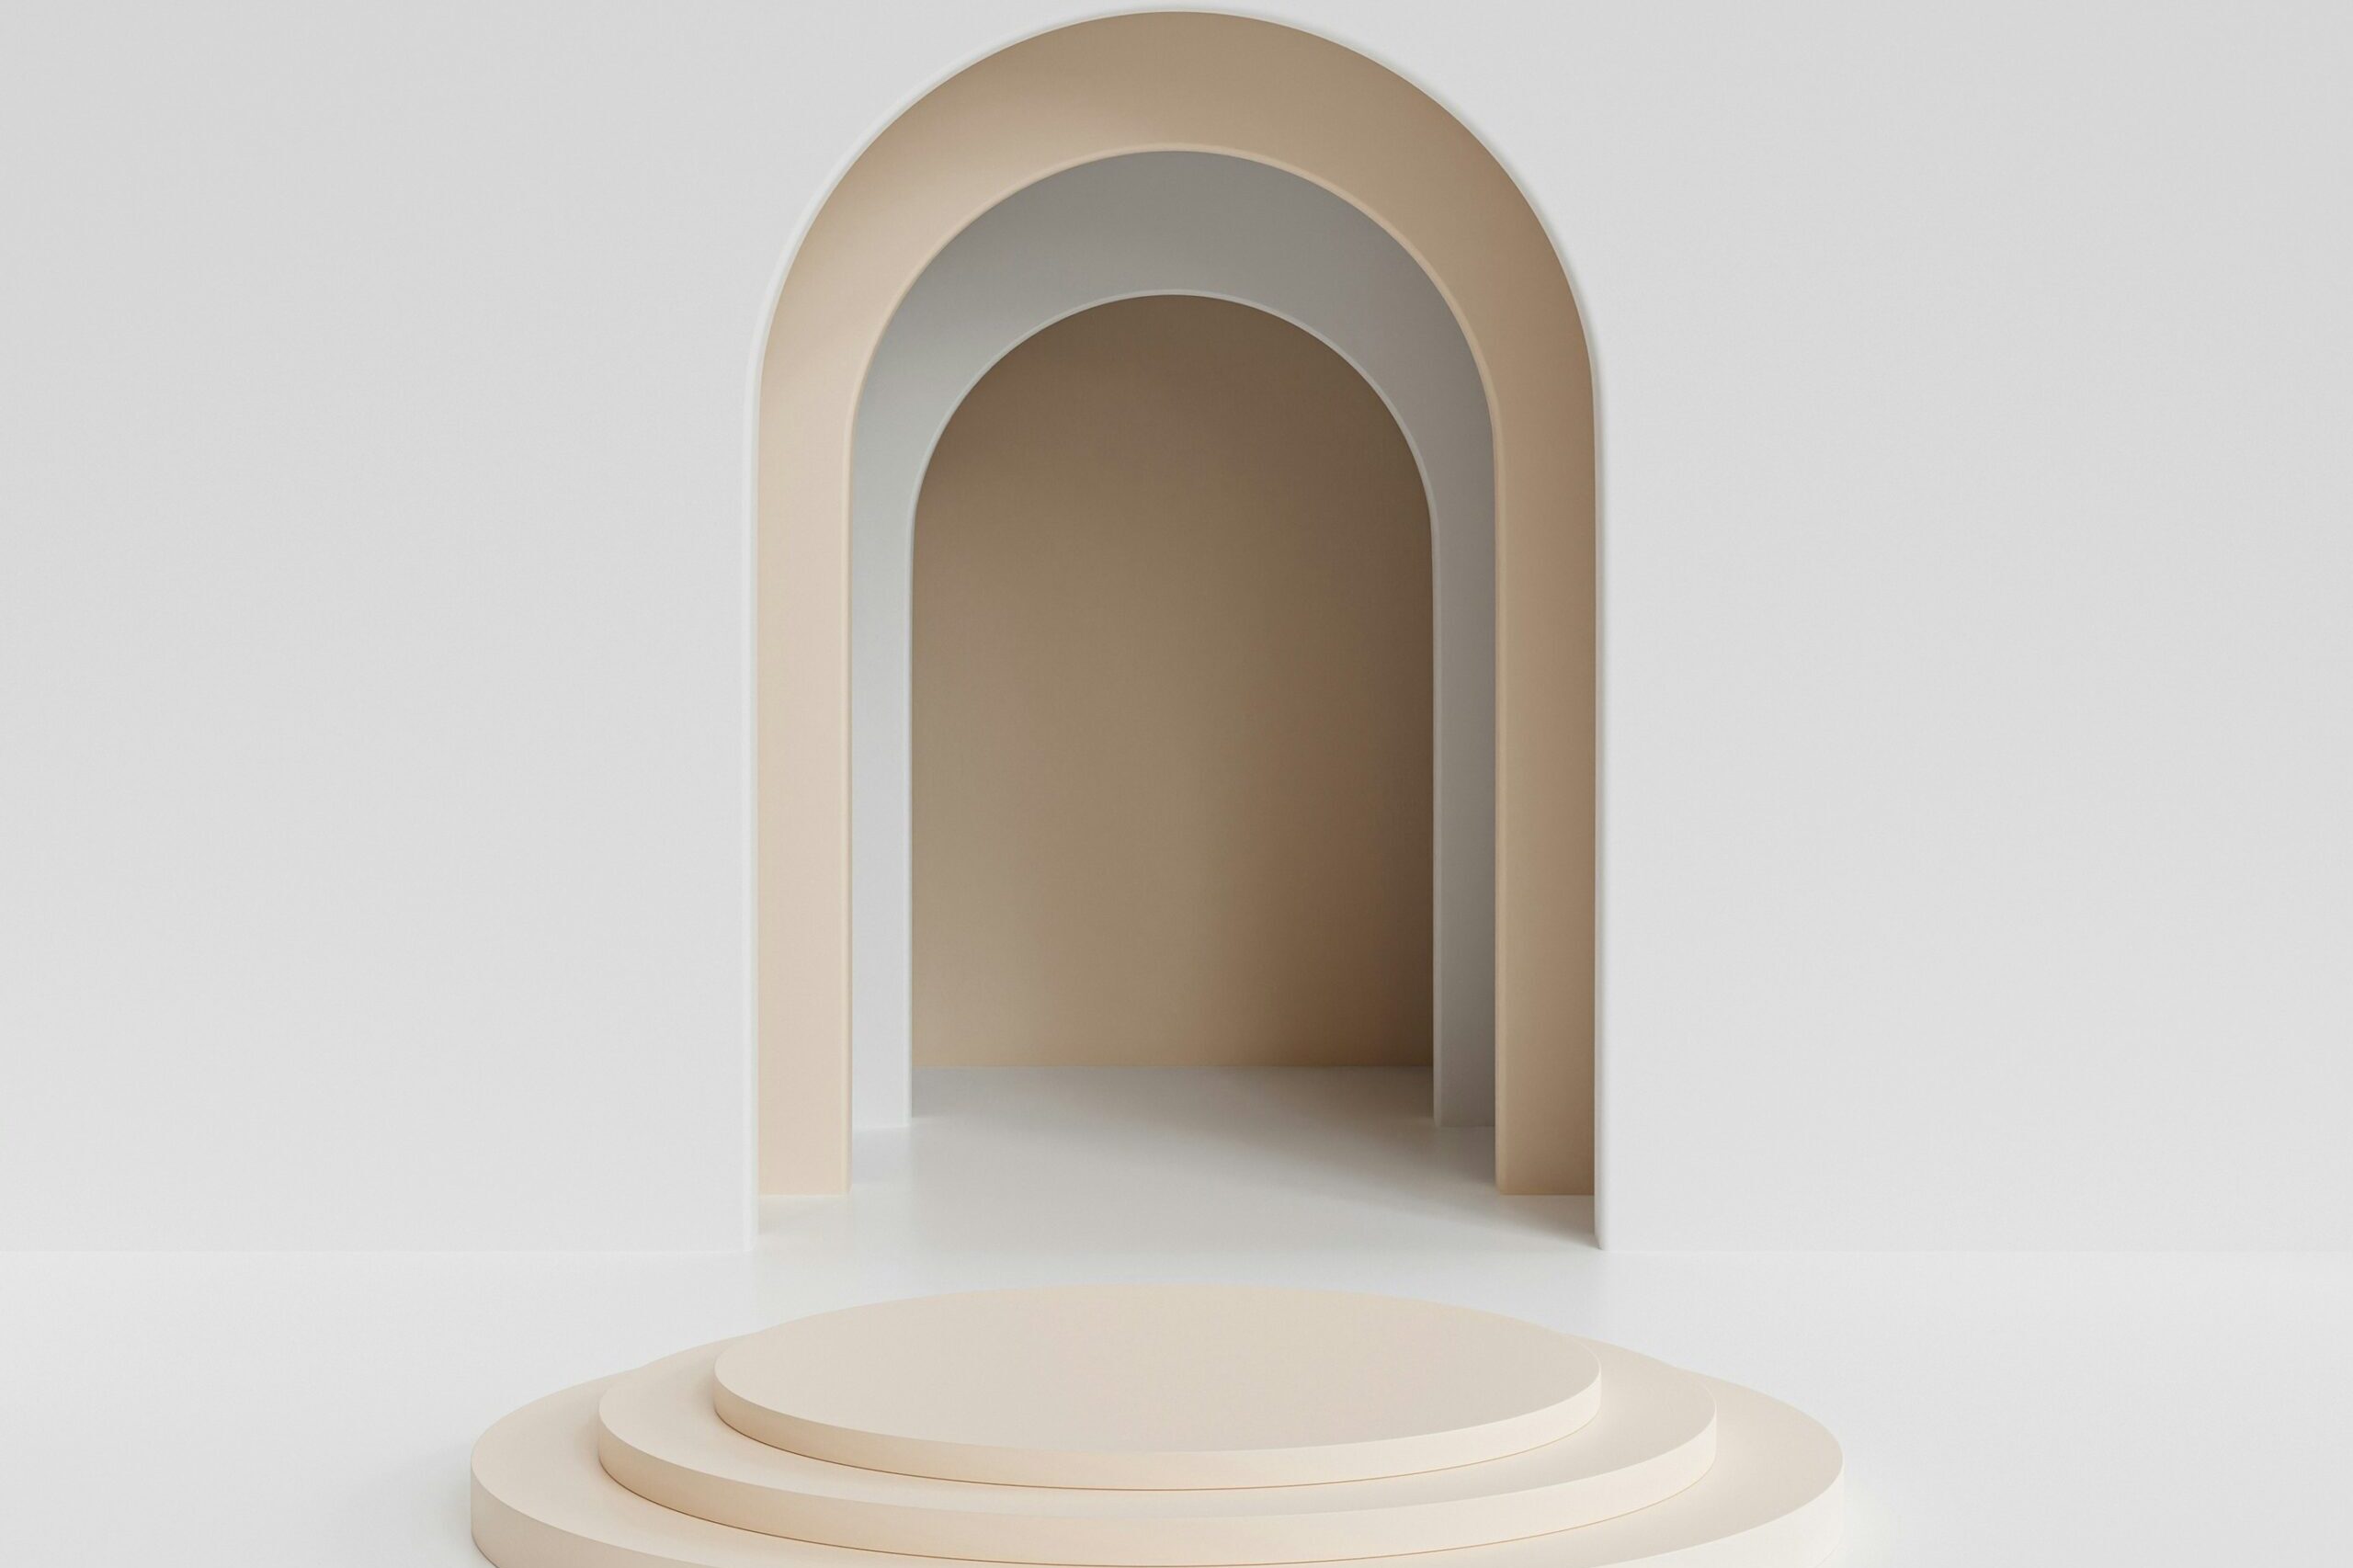 en abstrakt hvid tunnel med en udefineret ende